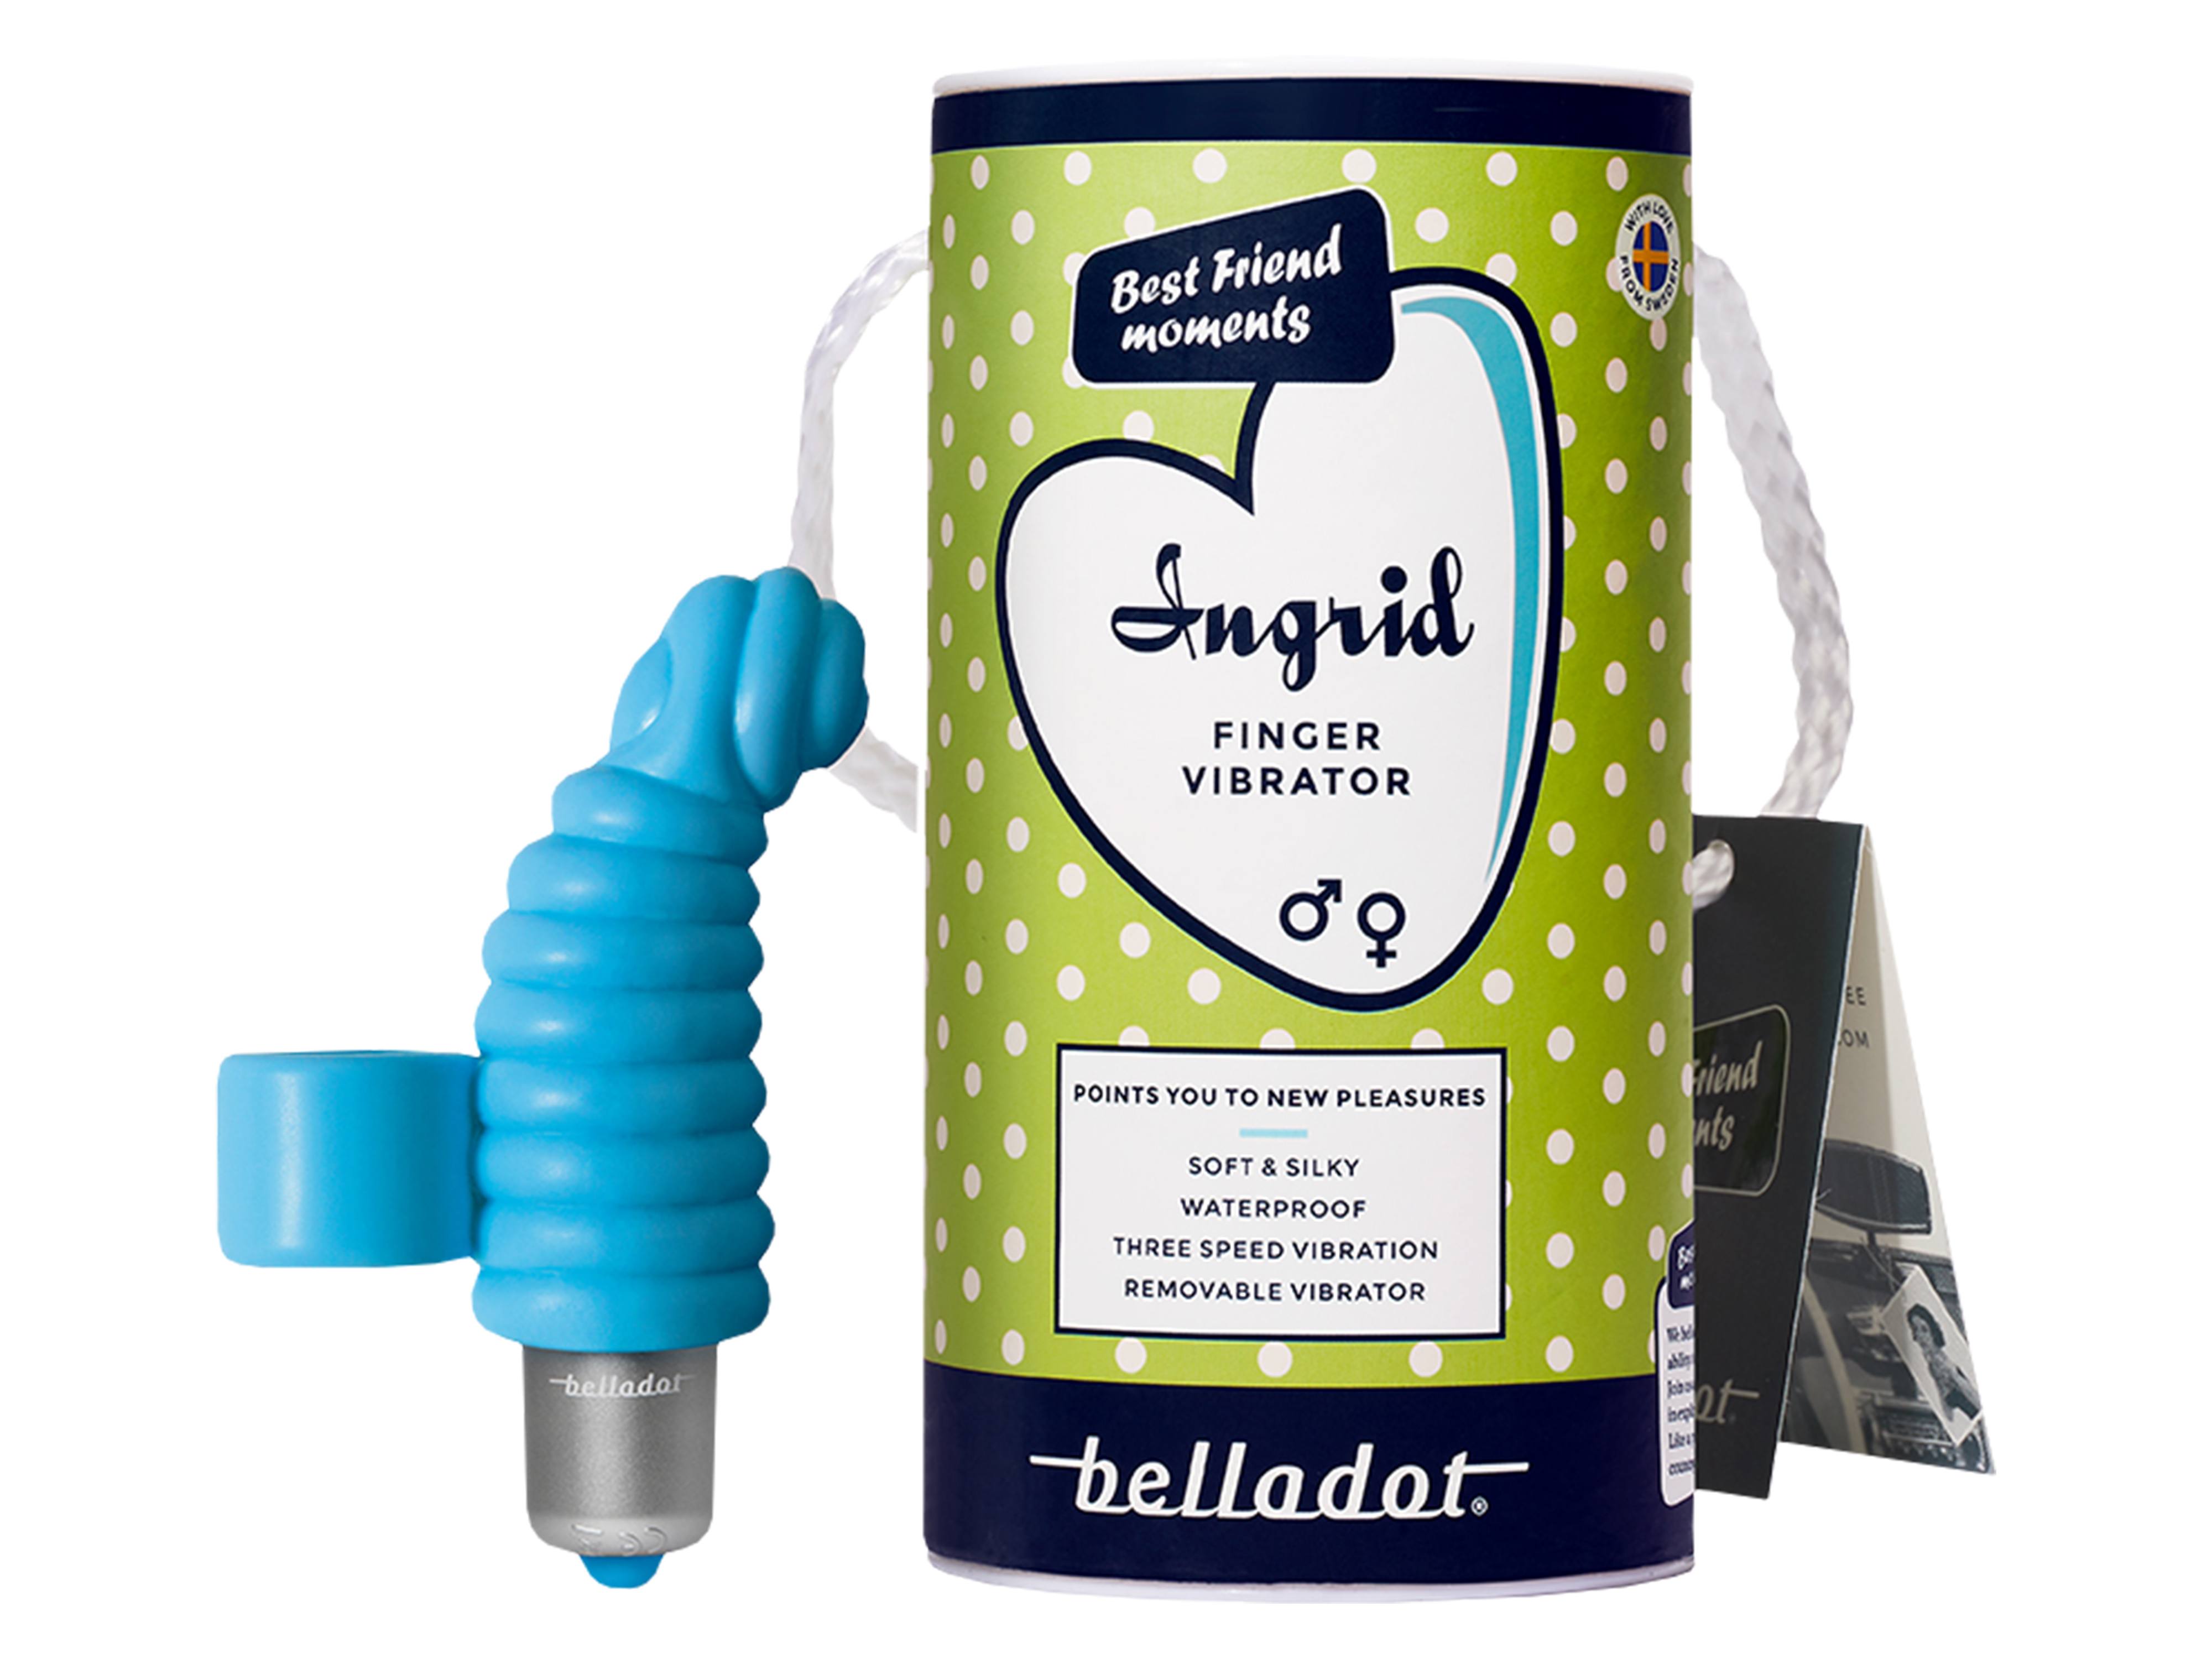 Belladot Ingrid Finger Vibrator, Blå, 1 stk.